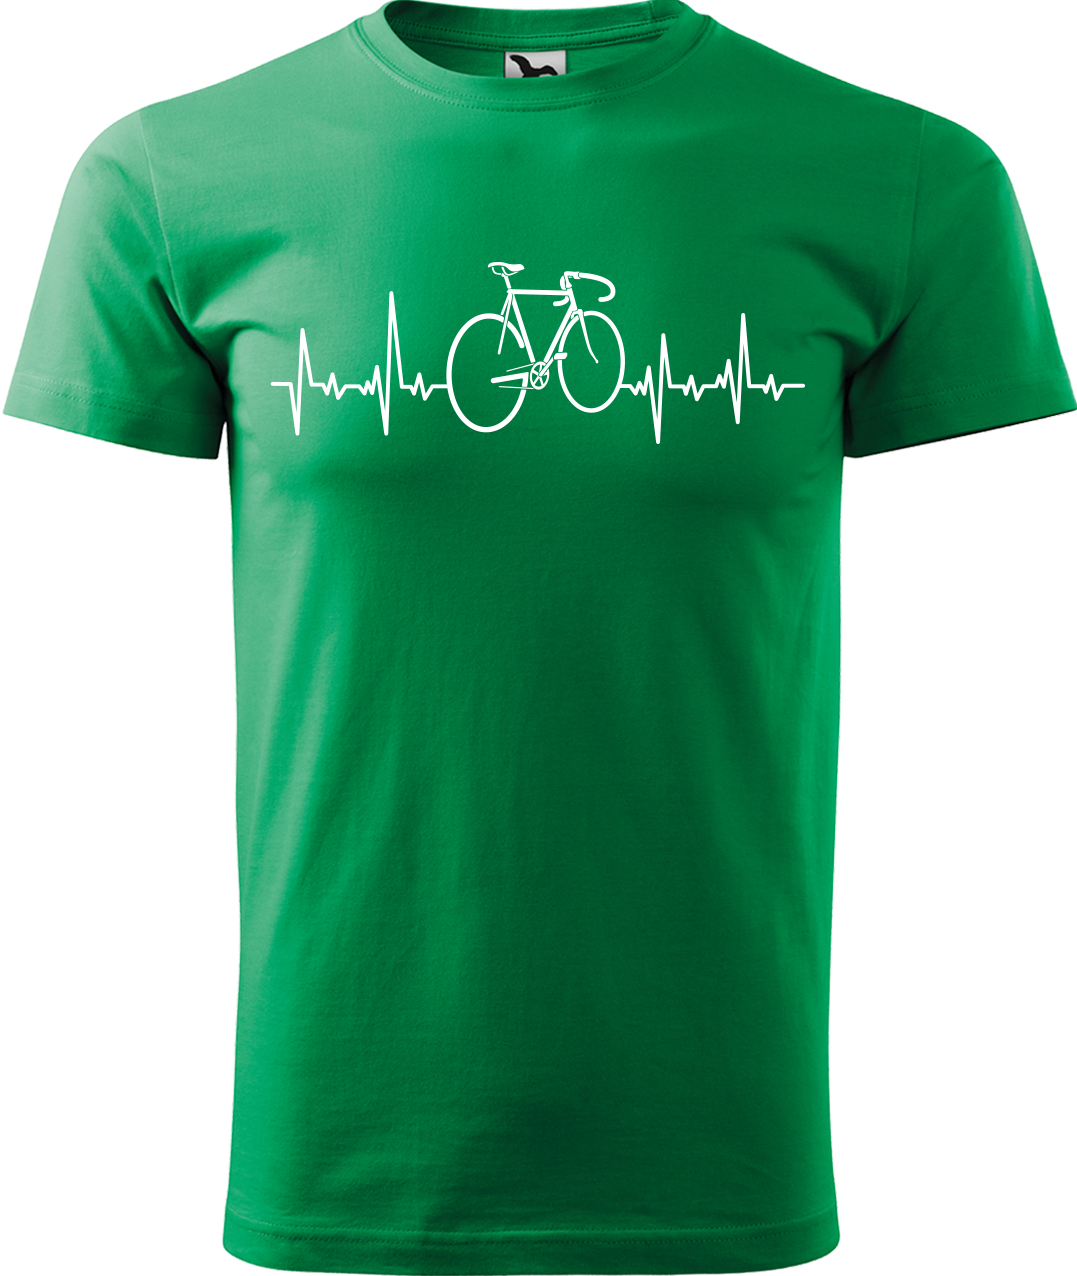 Pánské tričko s kolem - Cyklistův kardiogram Velikost: L, Barva: Středně zelená (16)